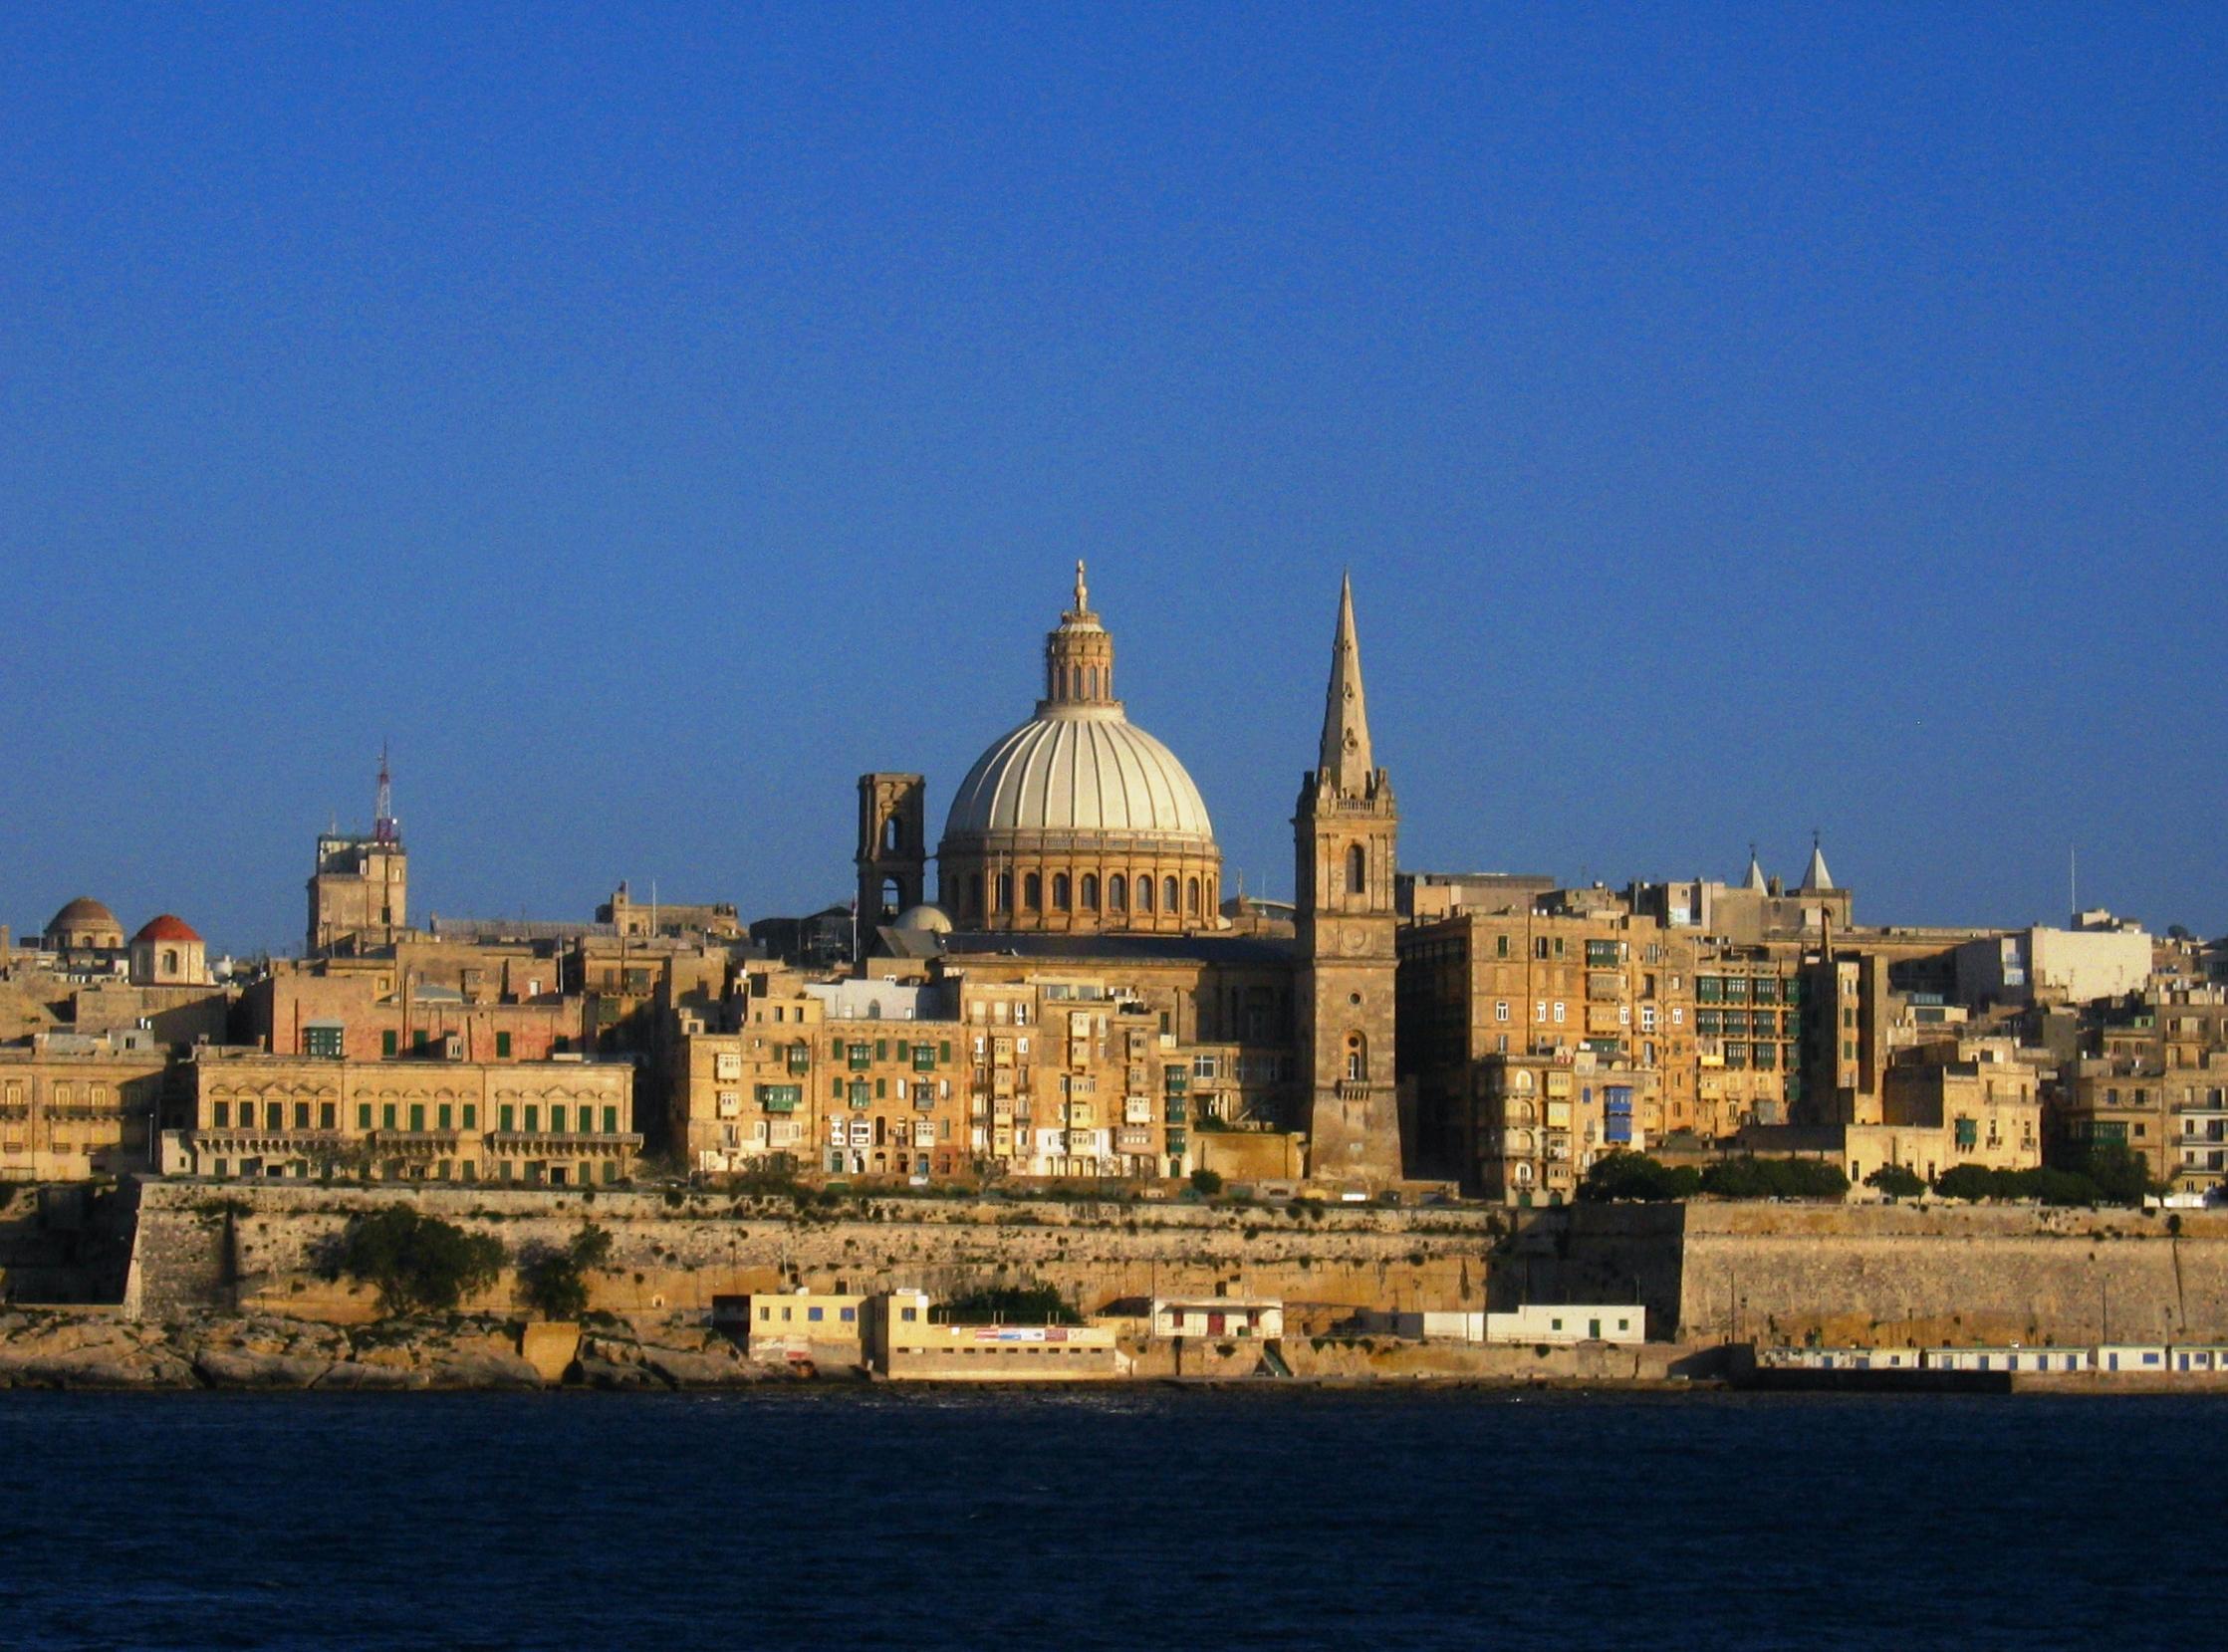 Maltas huvudstad Valletta där EU tillsammans med afrikanska stater och andra ska diskutera aktuella flyktingfrågor. (Foto: Briangotts) Wikimedia)